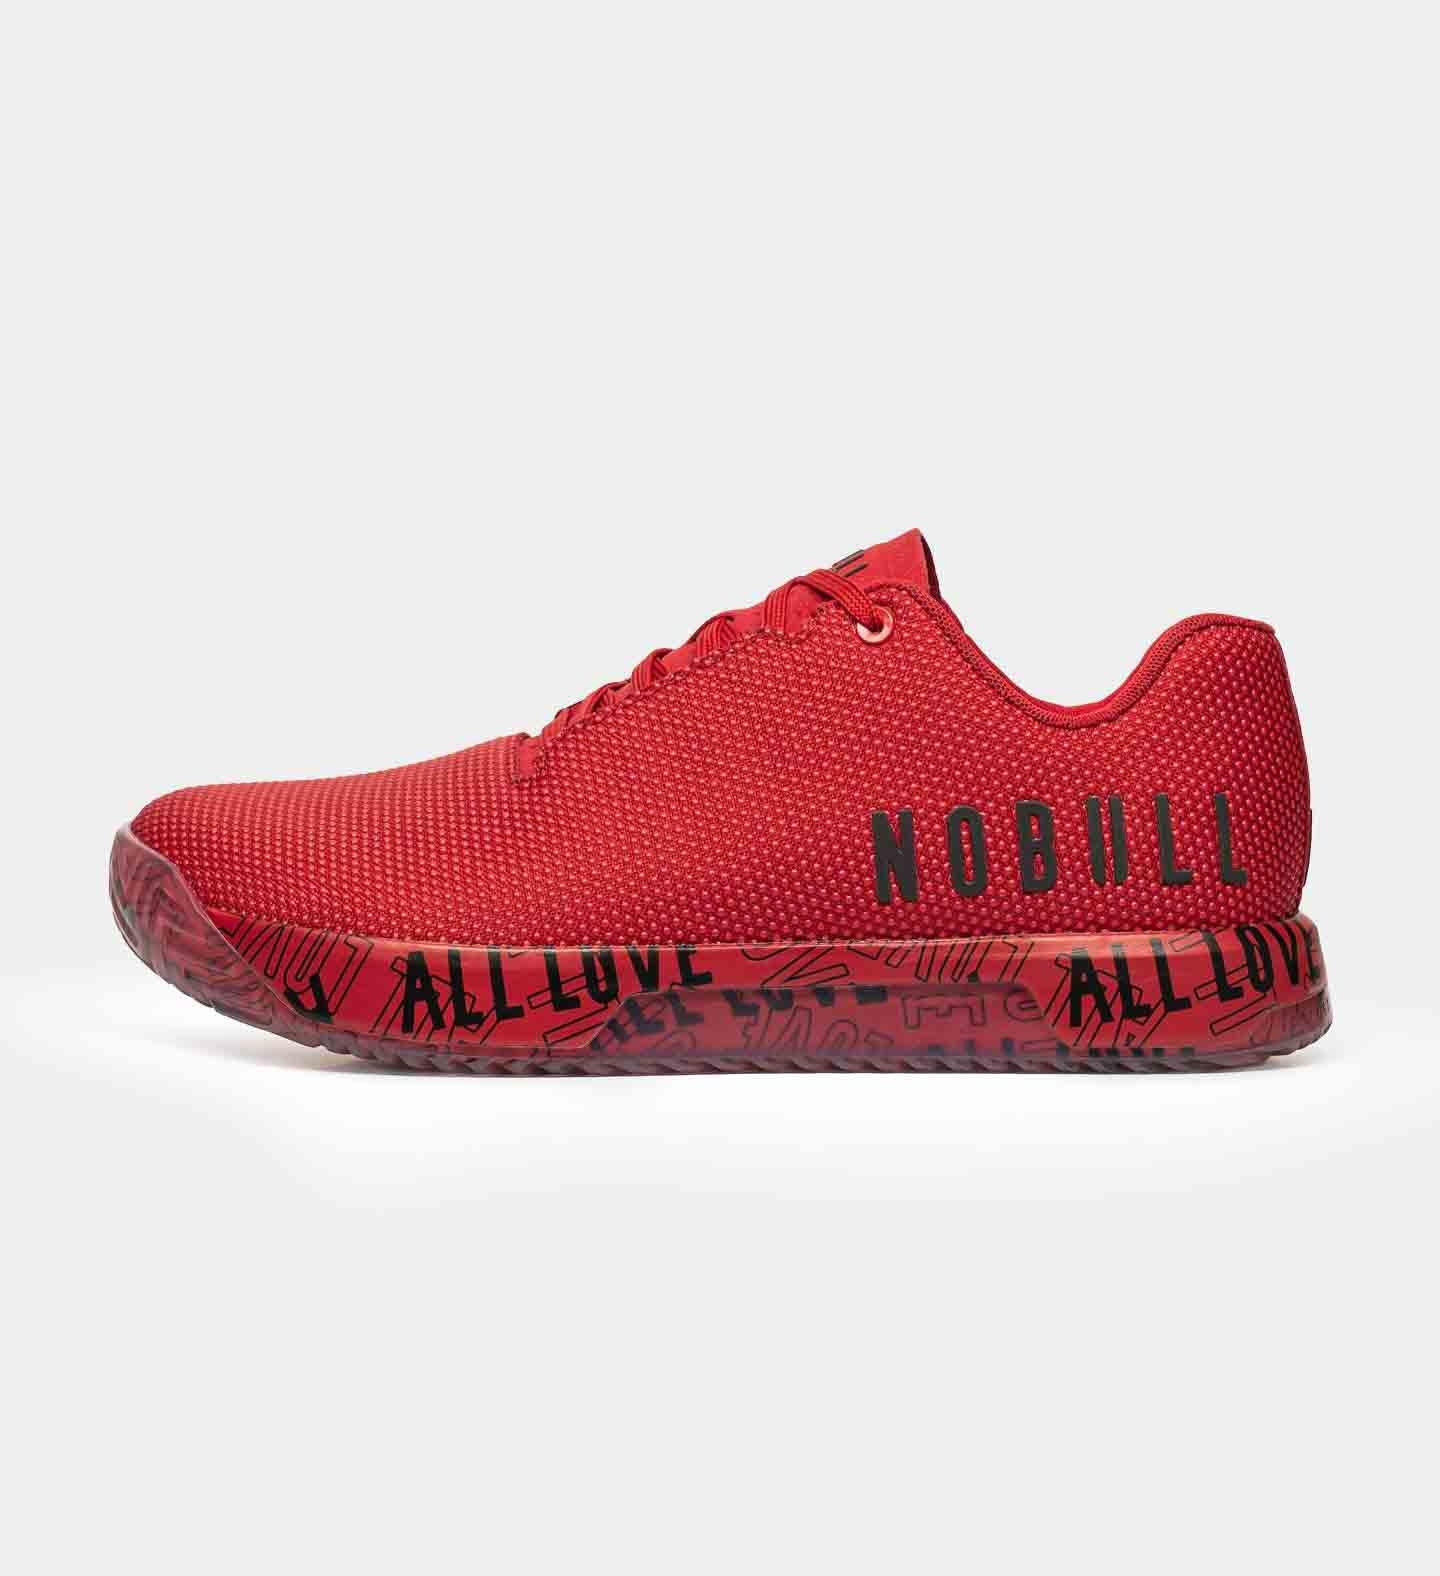 MEN'S ALL LOVE RUBY NOBULL IMPACT | Men's Red Training Shoes | NOBULL